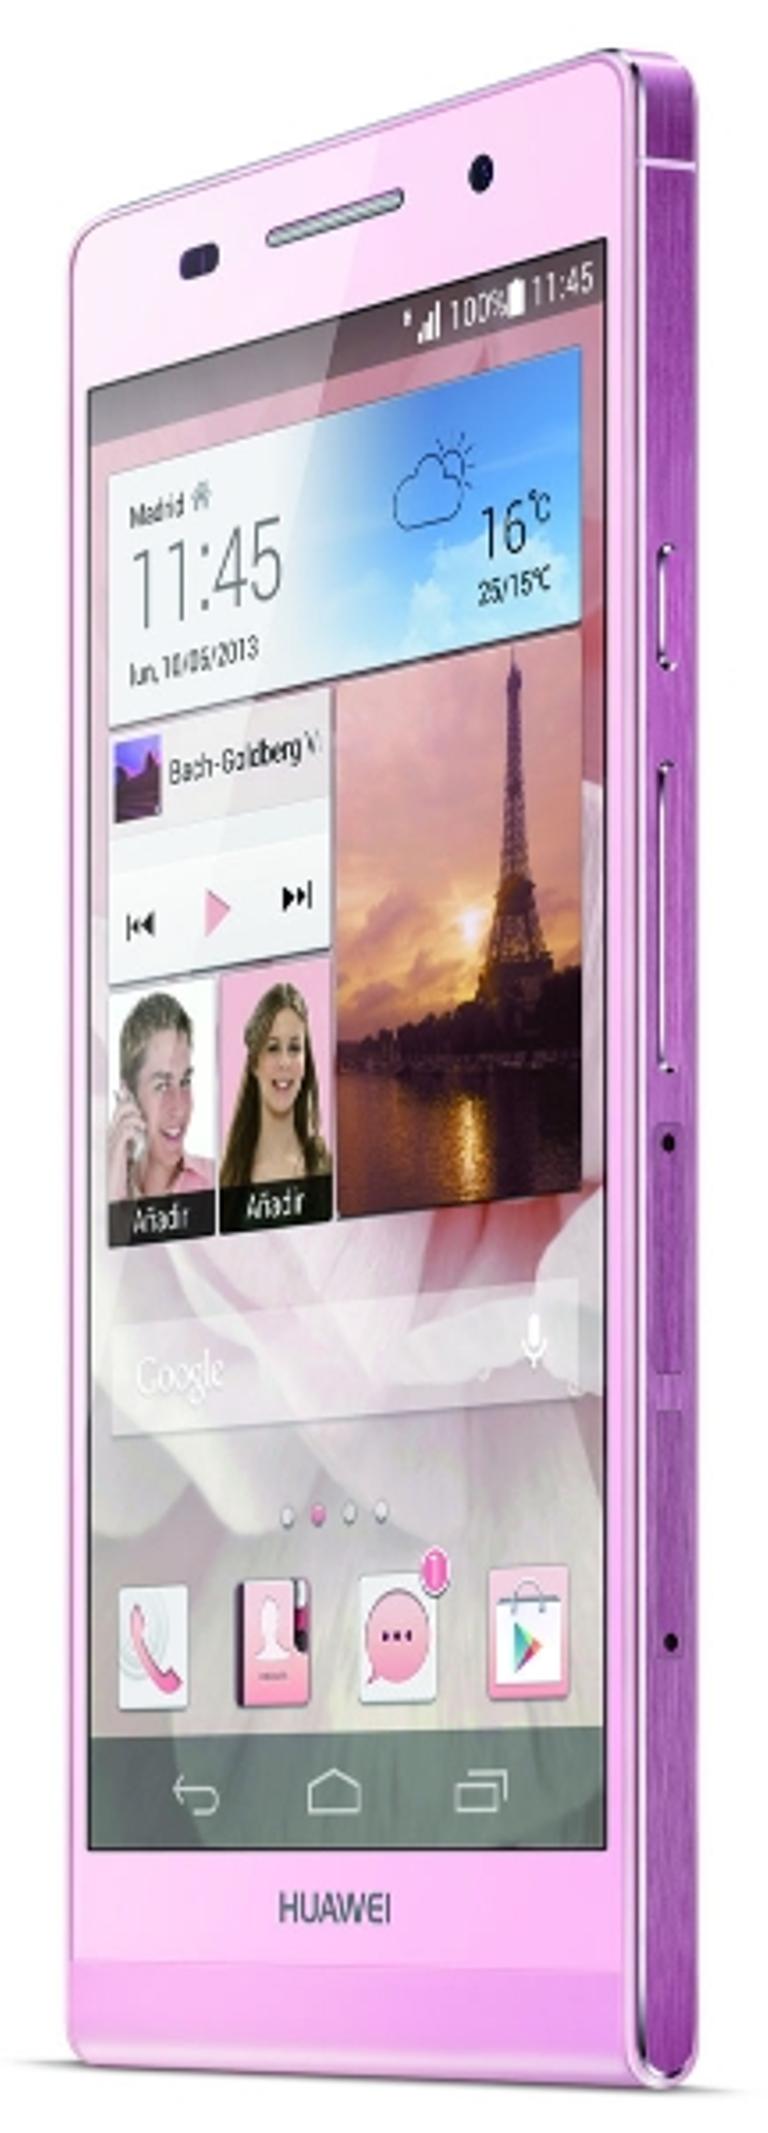 Huawei Ascend P6 en color rosa